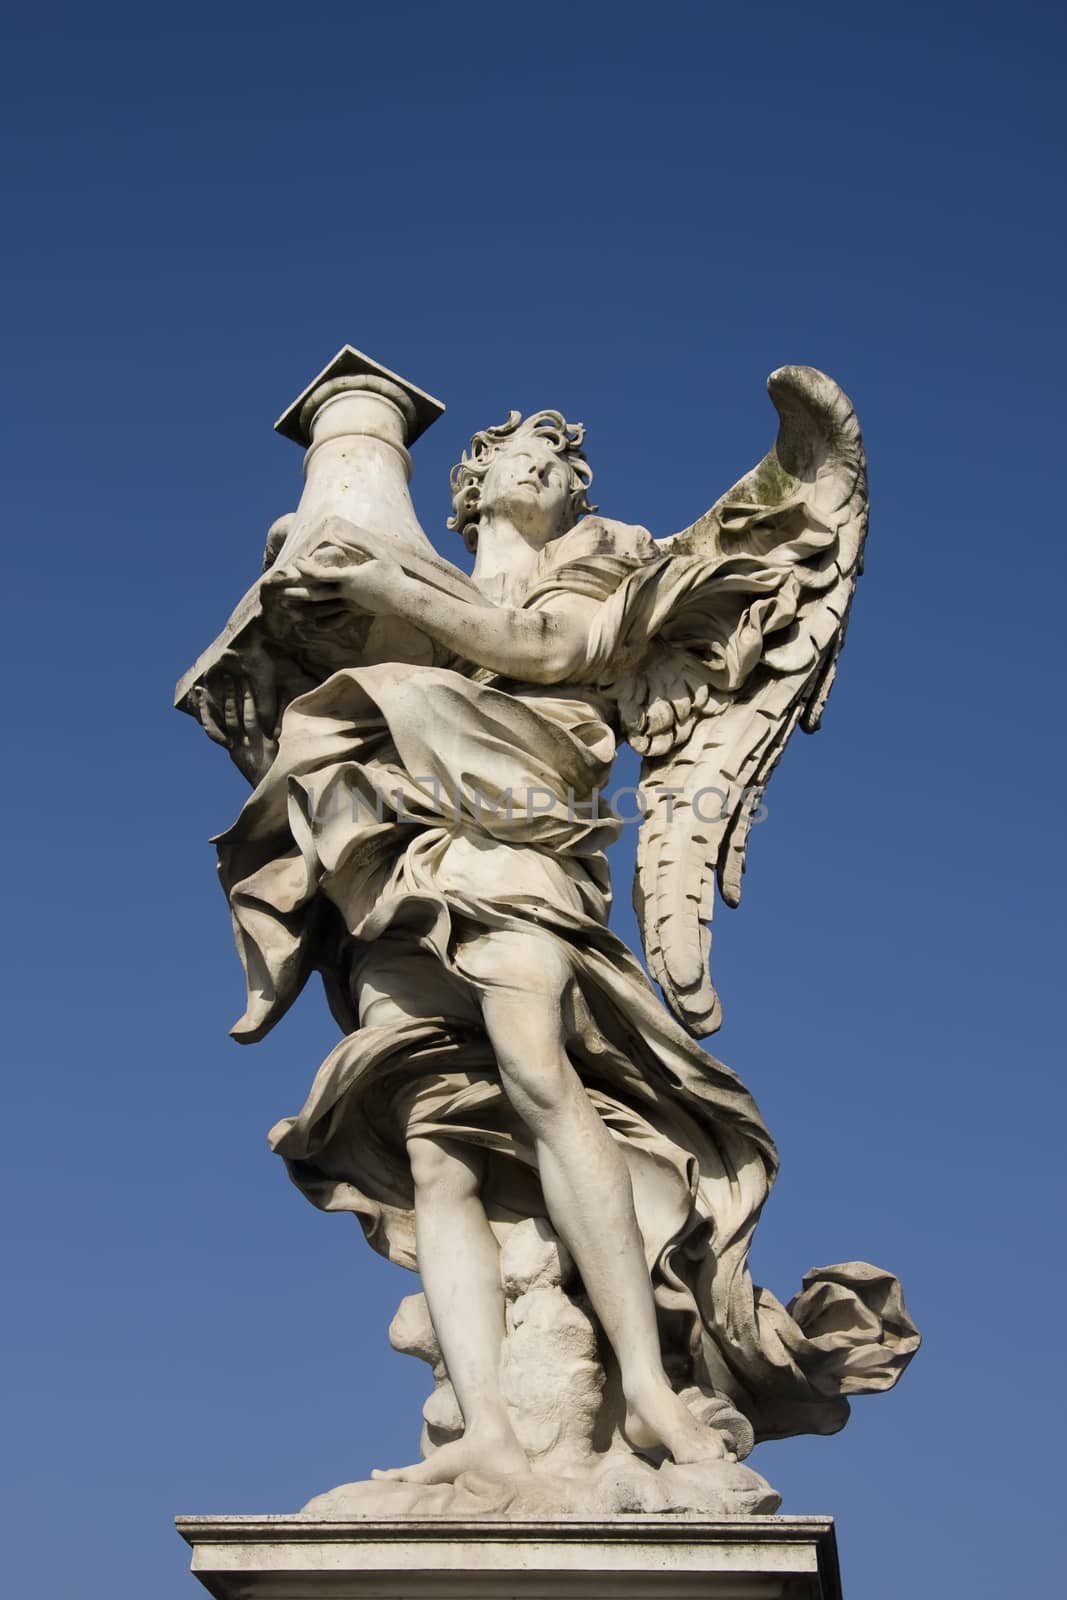 Angel statue on the St. Angelo Bridge in Rome by fotoecho